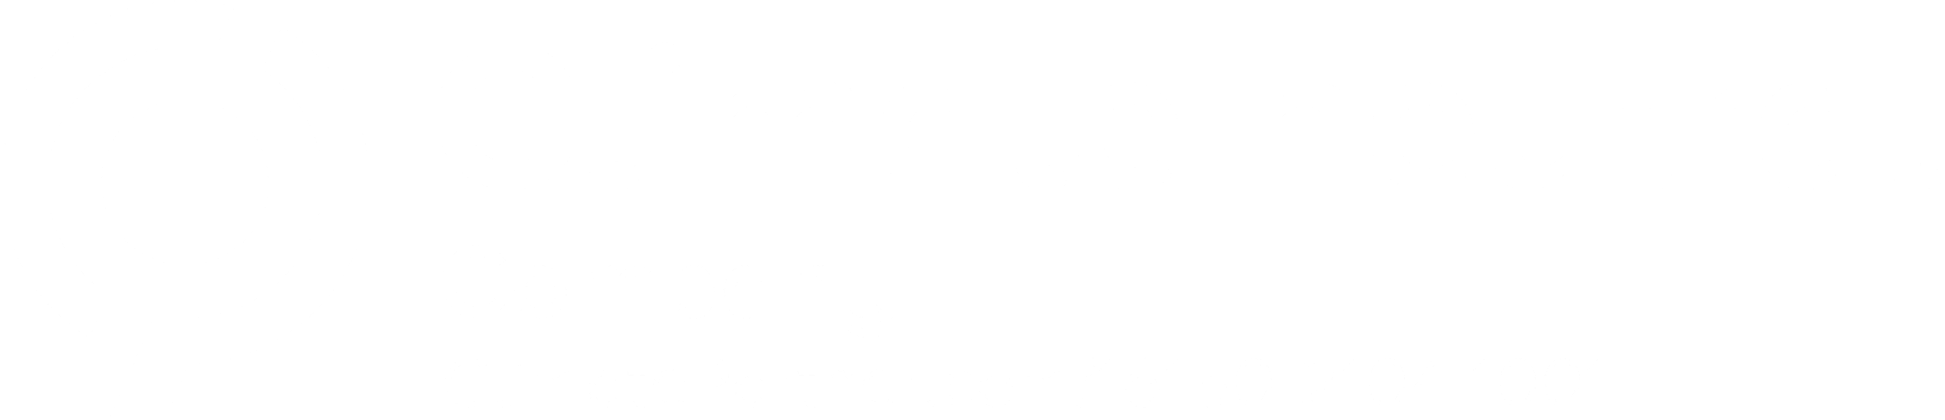 ClimatePartner logo